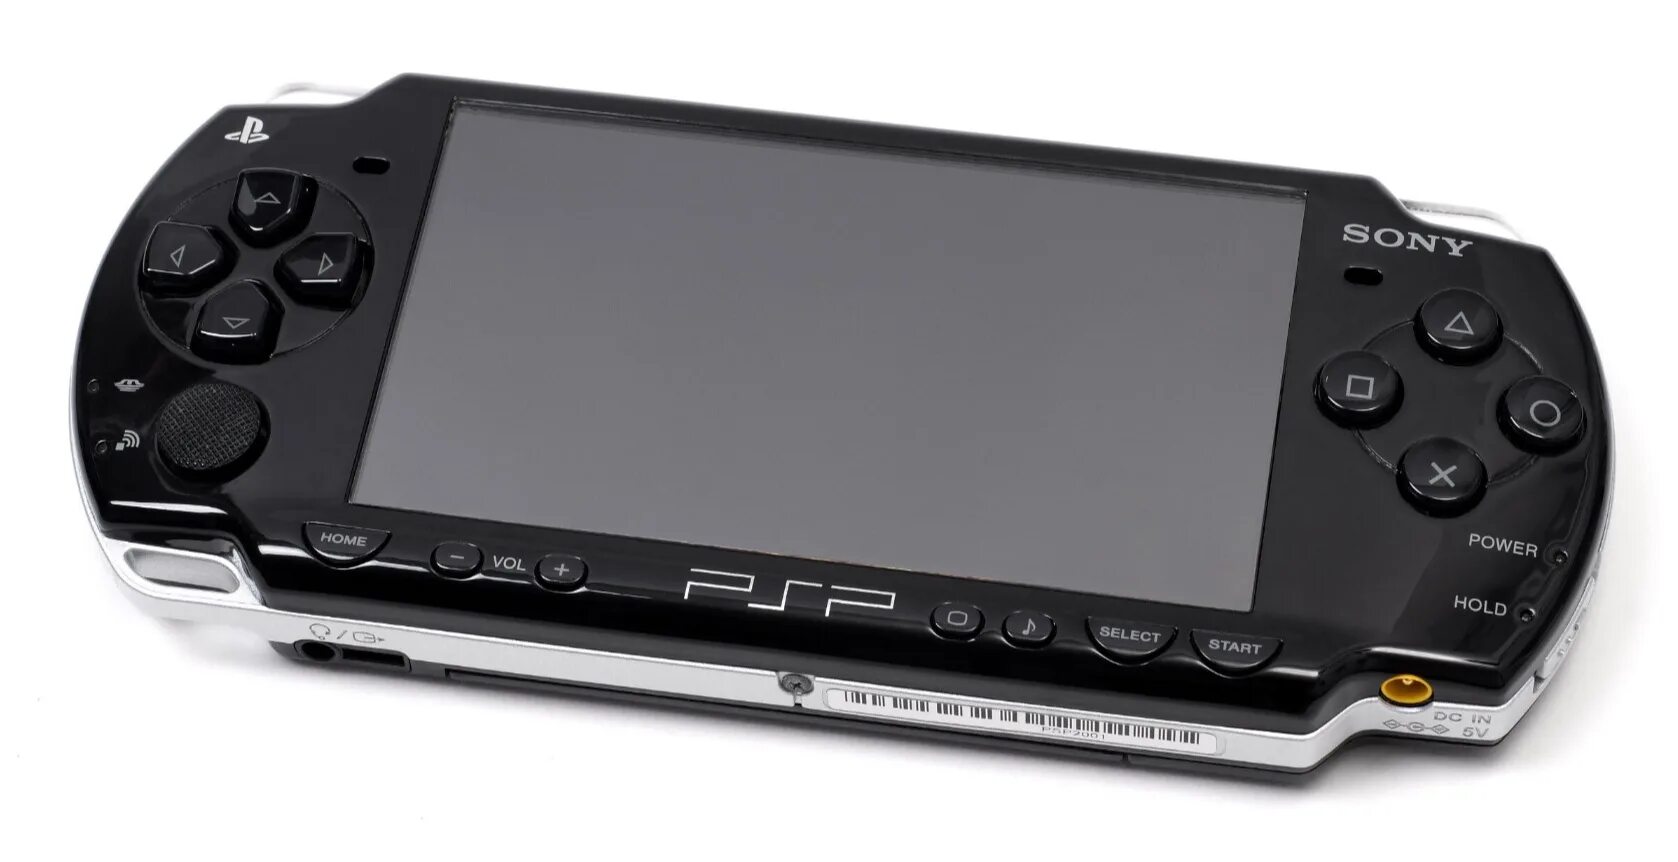 Sony PLAYSTATION Portable 2004. PLAYSTATION Portable e1000. Sony PLAYSTATION Portable PSP 3000. Sony PLAYSTATION Portable go Black (PSP-n1008/Rus). Psp vk